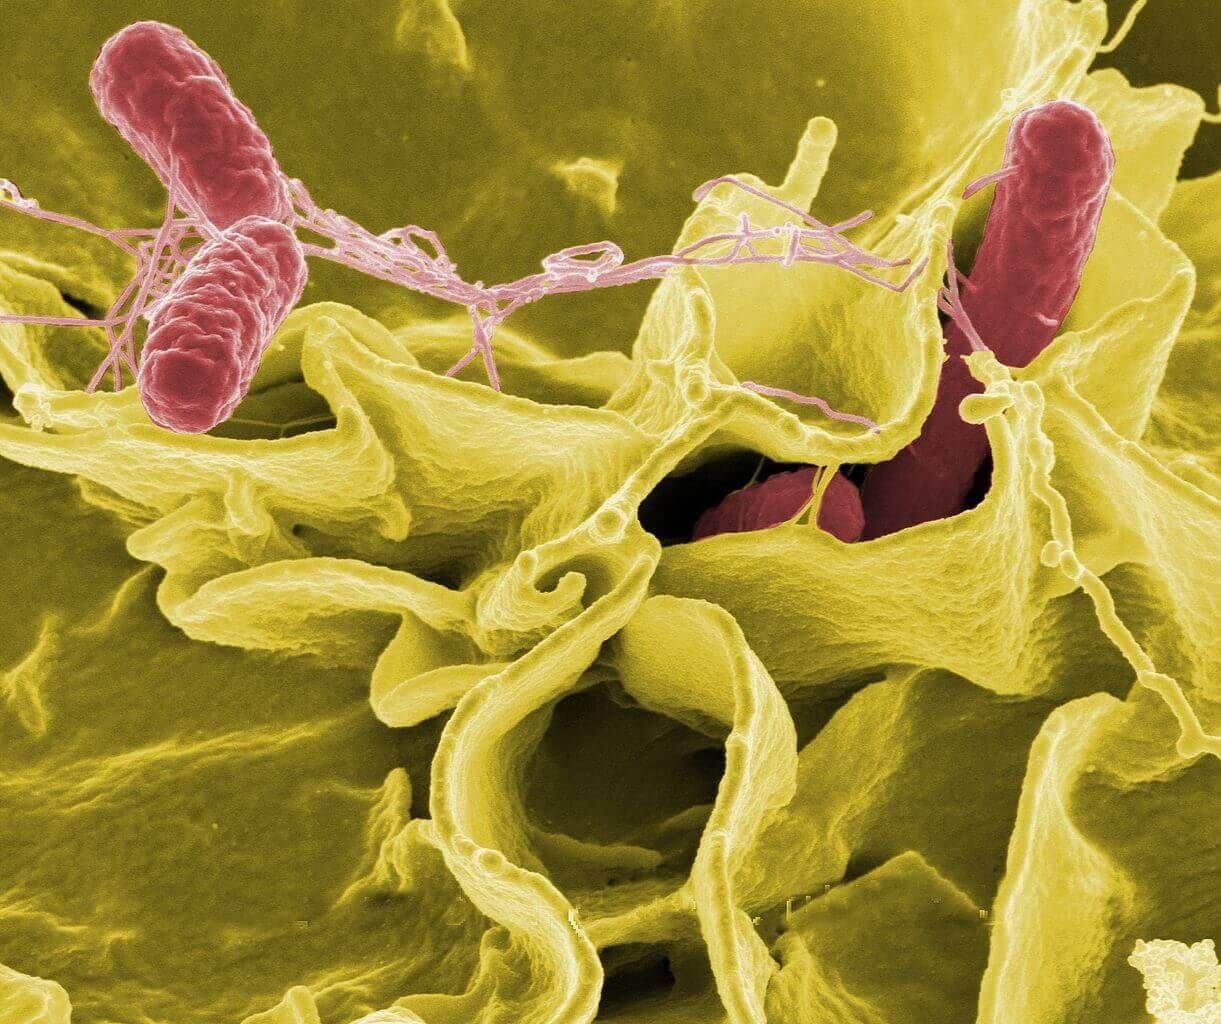 La presencia de salmonella en intestinos puede generar la salmonelosis